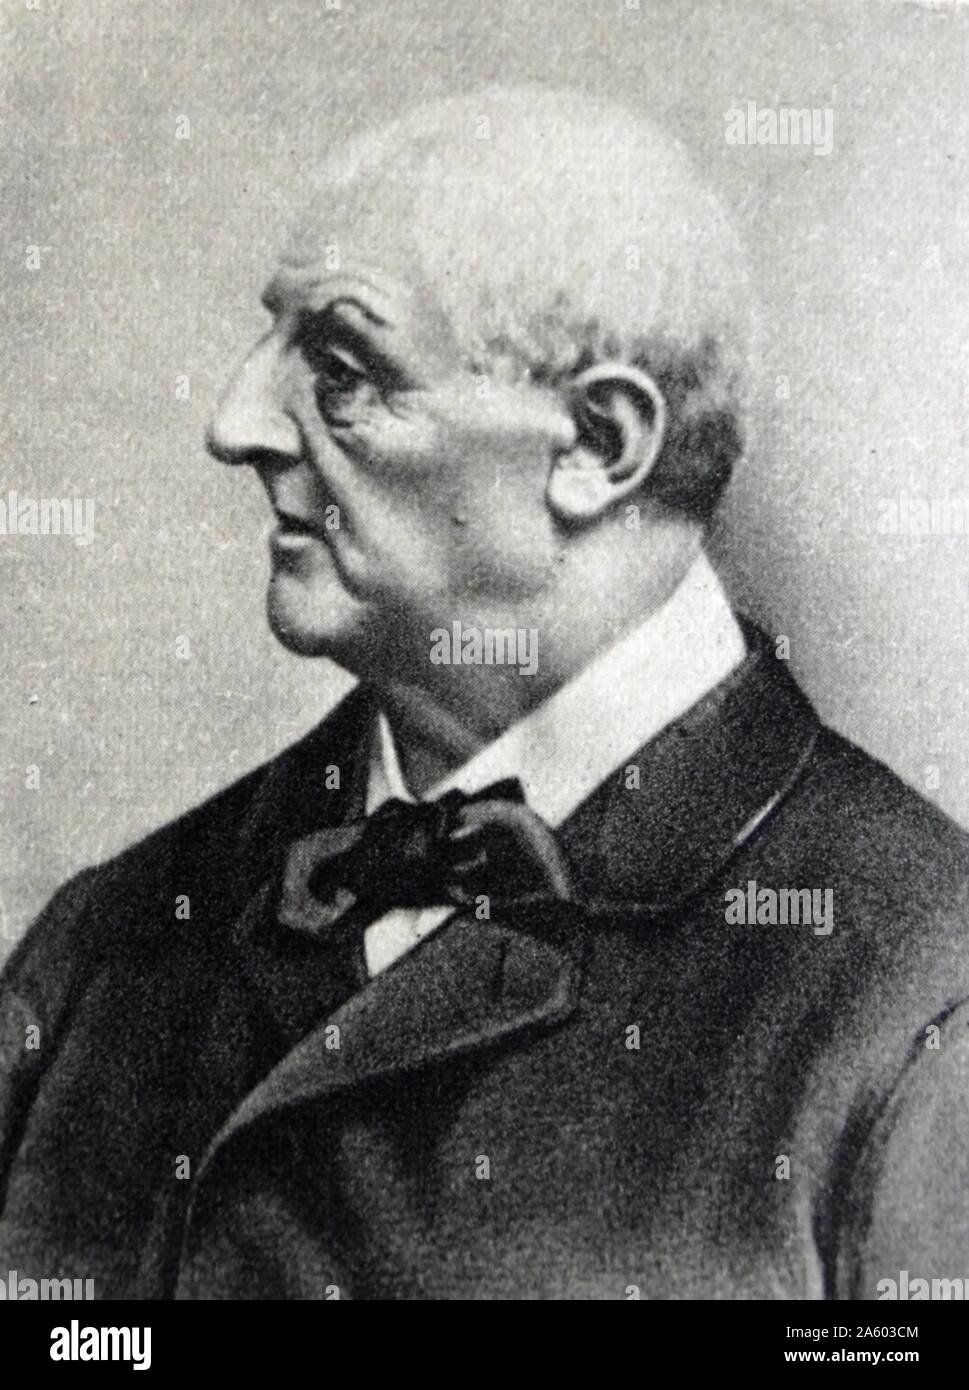 Portrait photographique de Anton Bruckner (1824-1896), un compositeur autrichien connu pour ses symphonies, messes, et des motets. Datée 1890 Banque D'Images